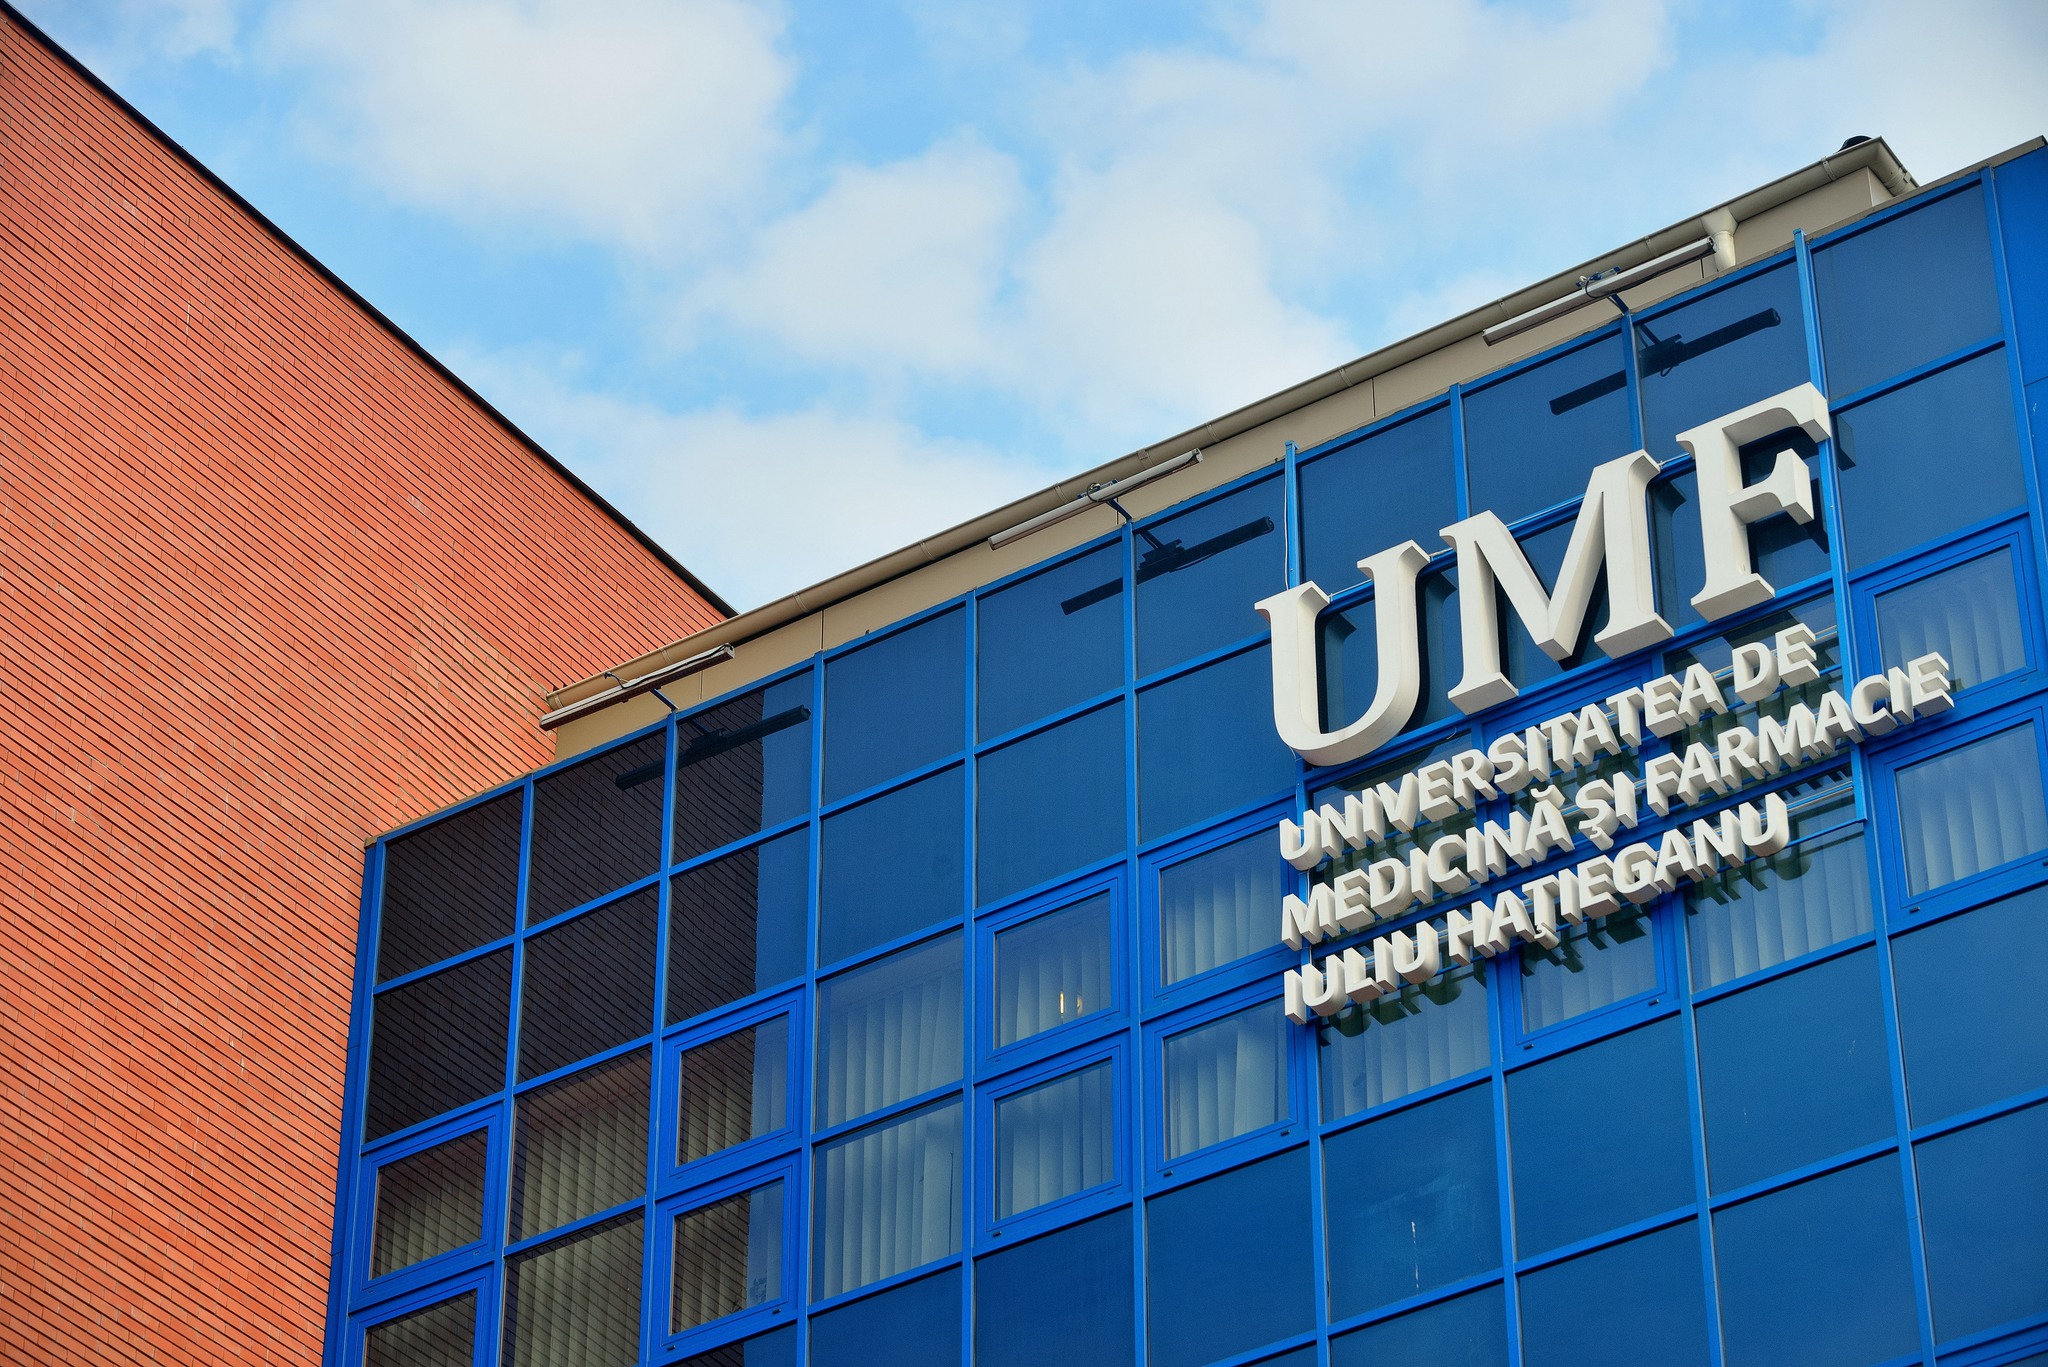 Sediul Universității de Medicină și Farmacie Cluj / Foto: Facebook - UMF „Iuliu Hațieganu”